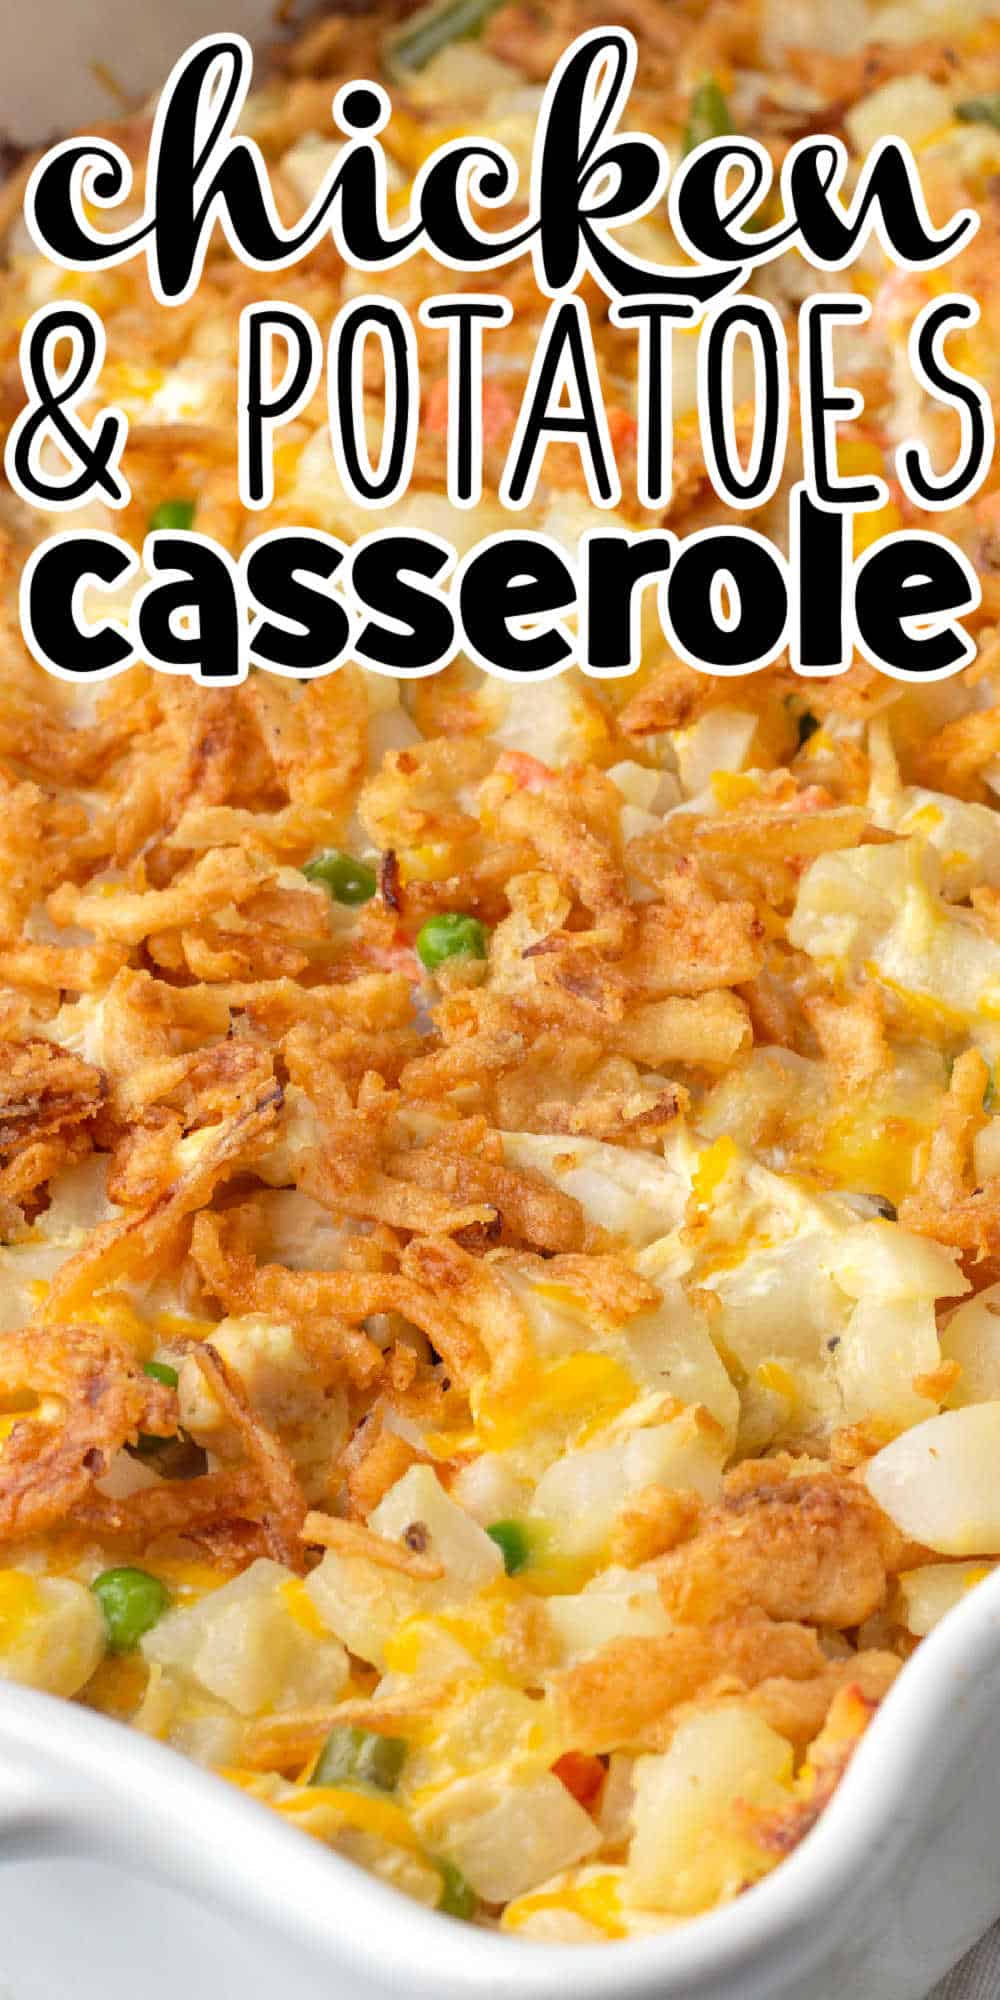 Cheesy Chicken and Potato Casserole with Veggies Recipe